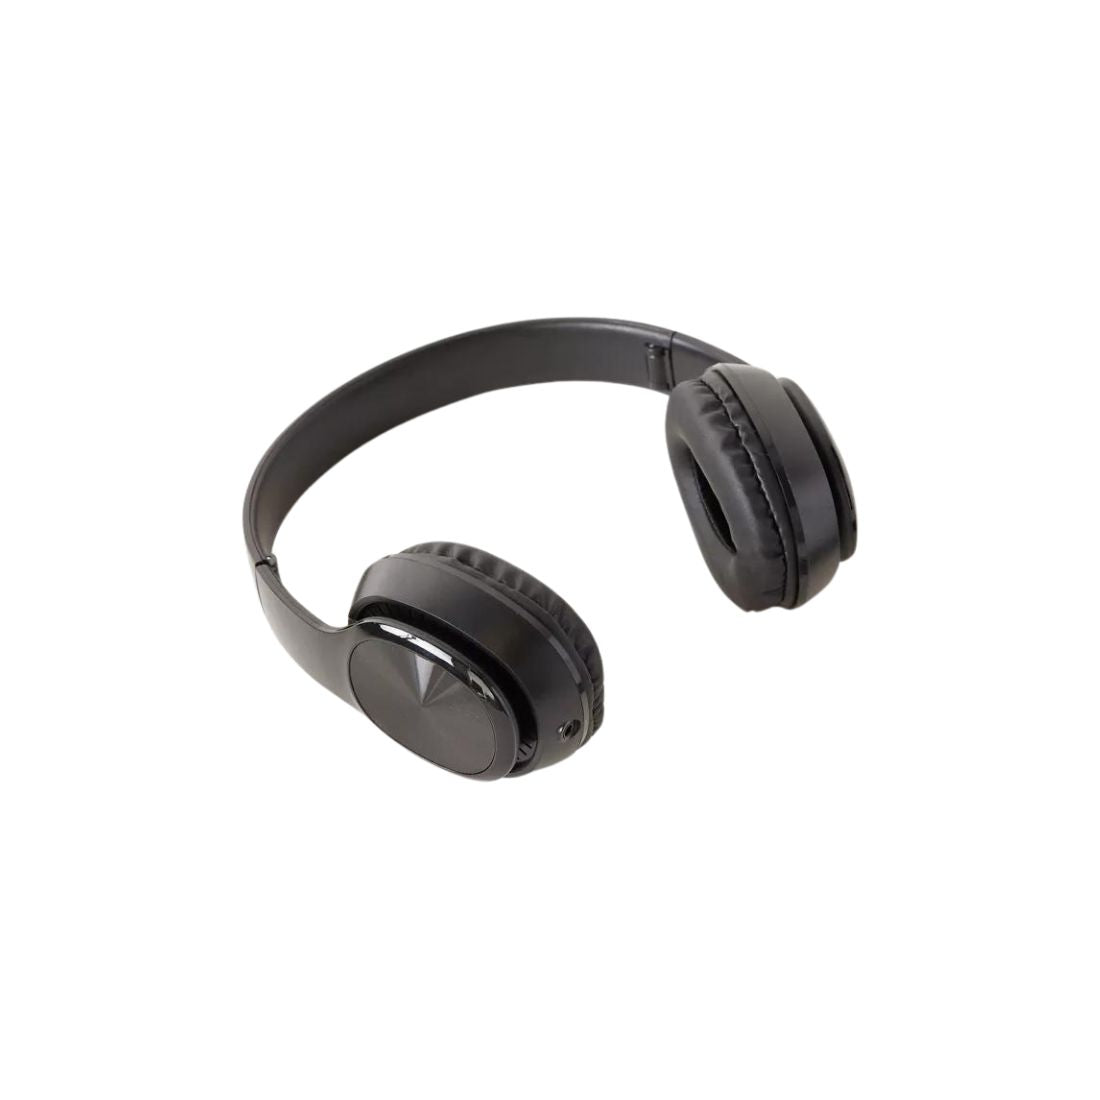 Black Minimalistic Headphones